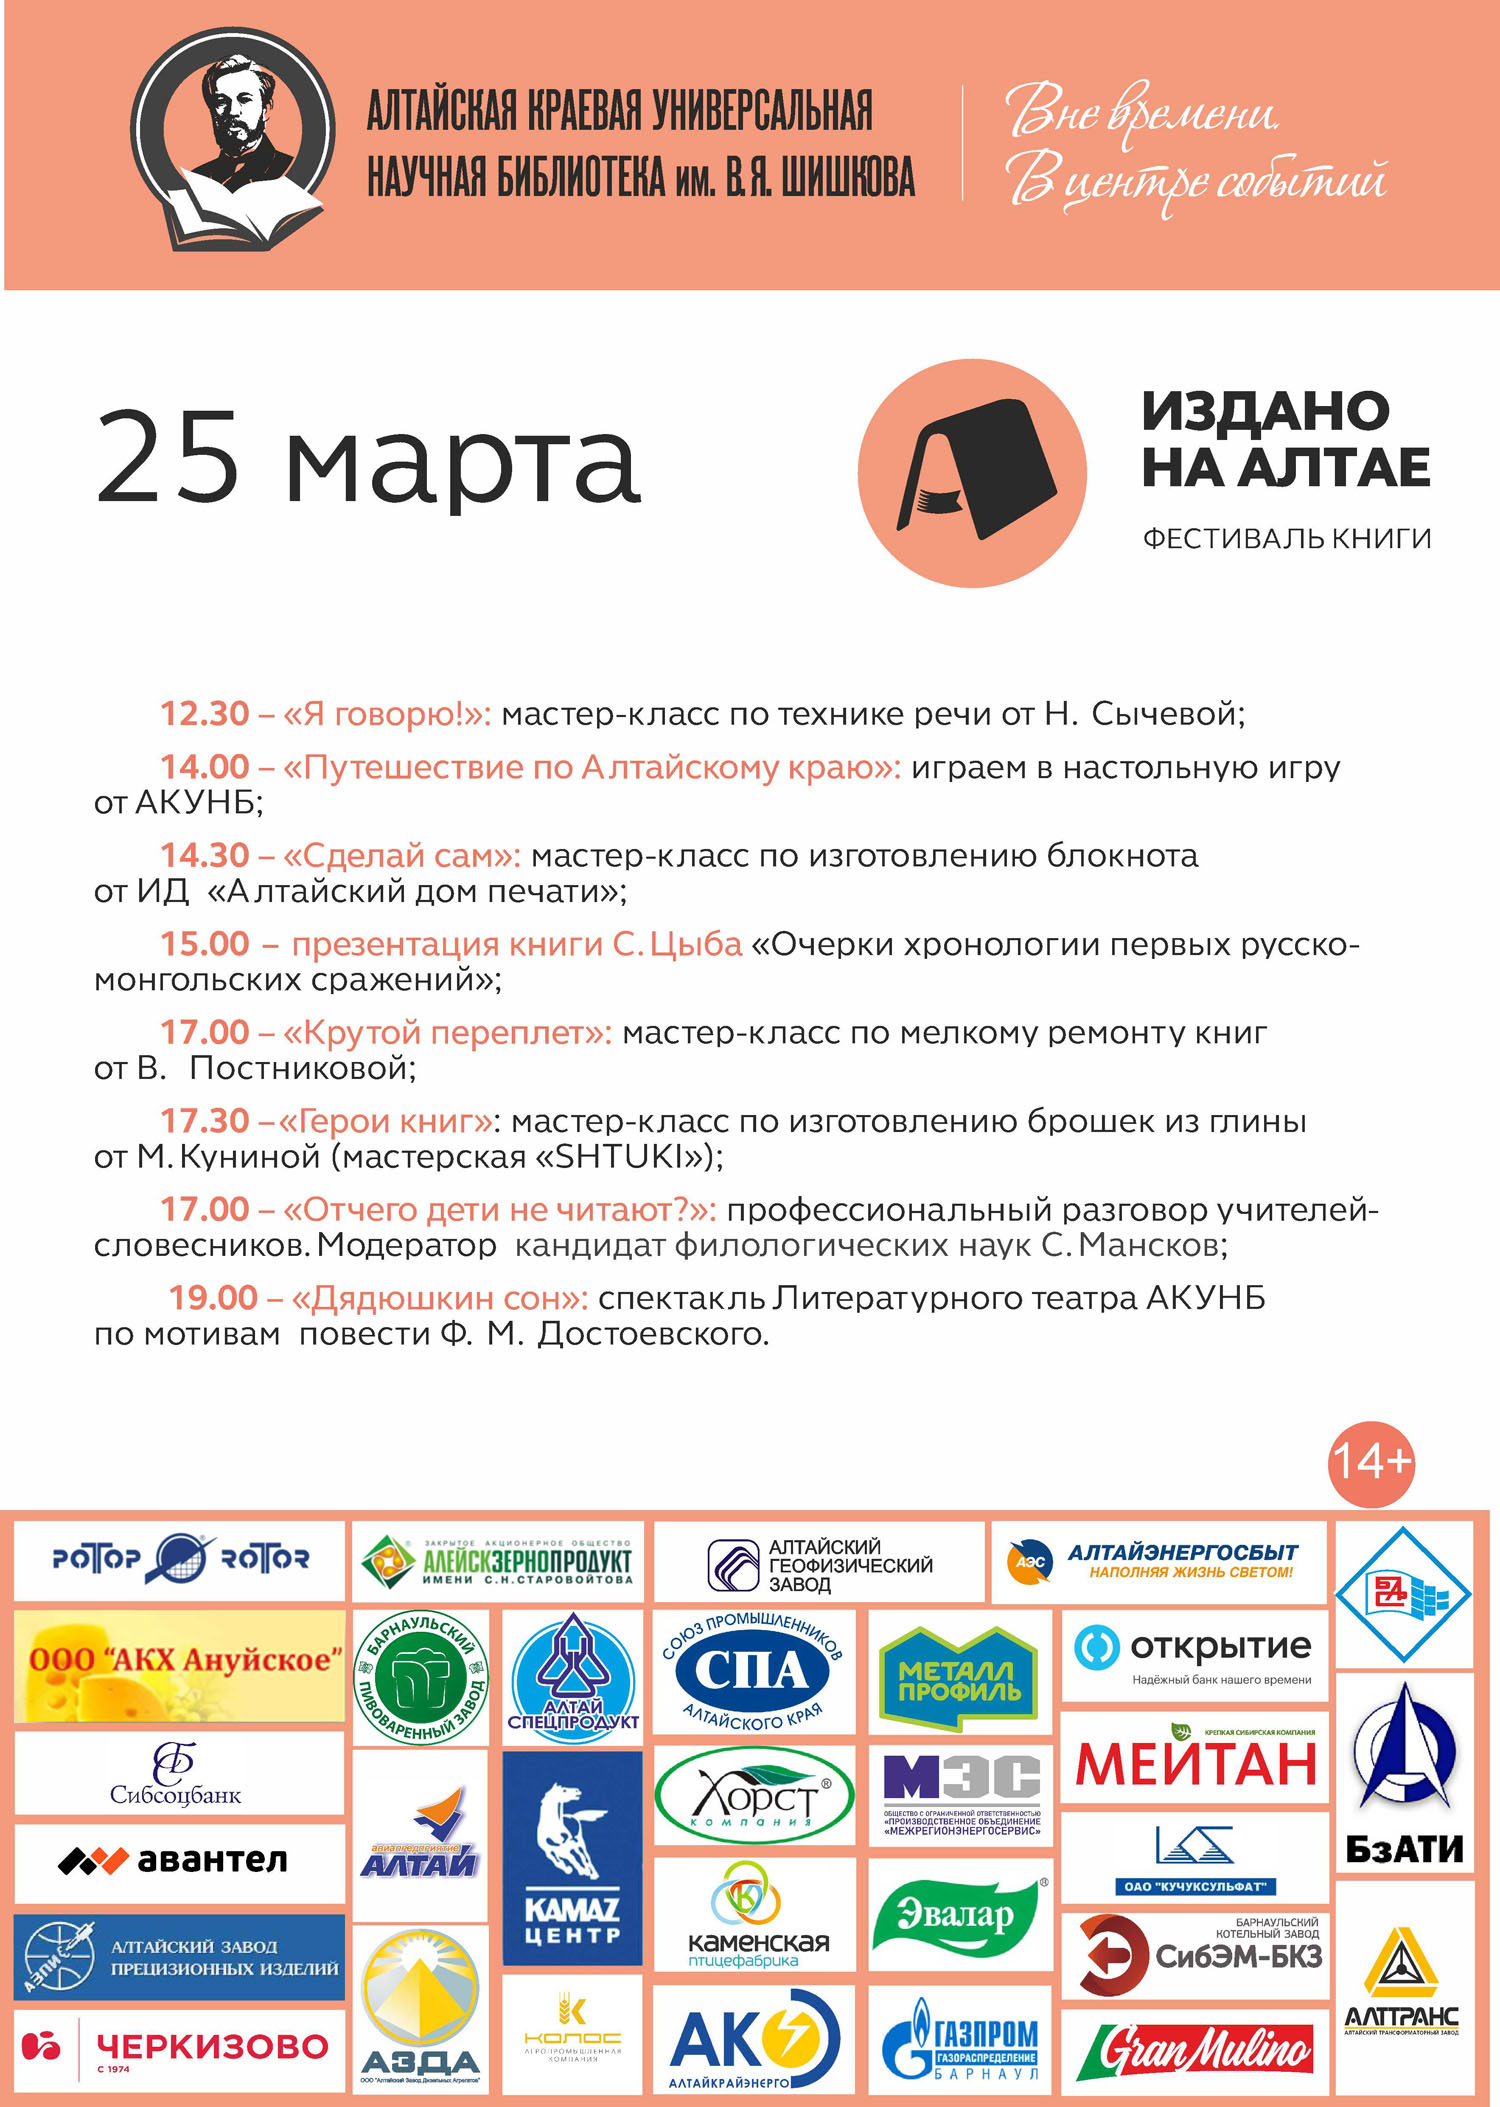 Главная неделя фестиваля «Издано на Алтае»: 45 причин прийти в «Шишковку»